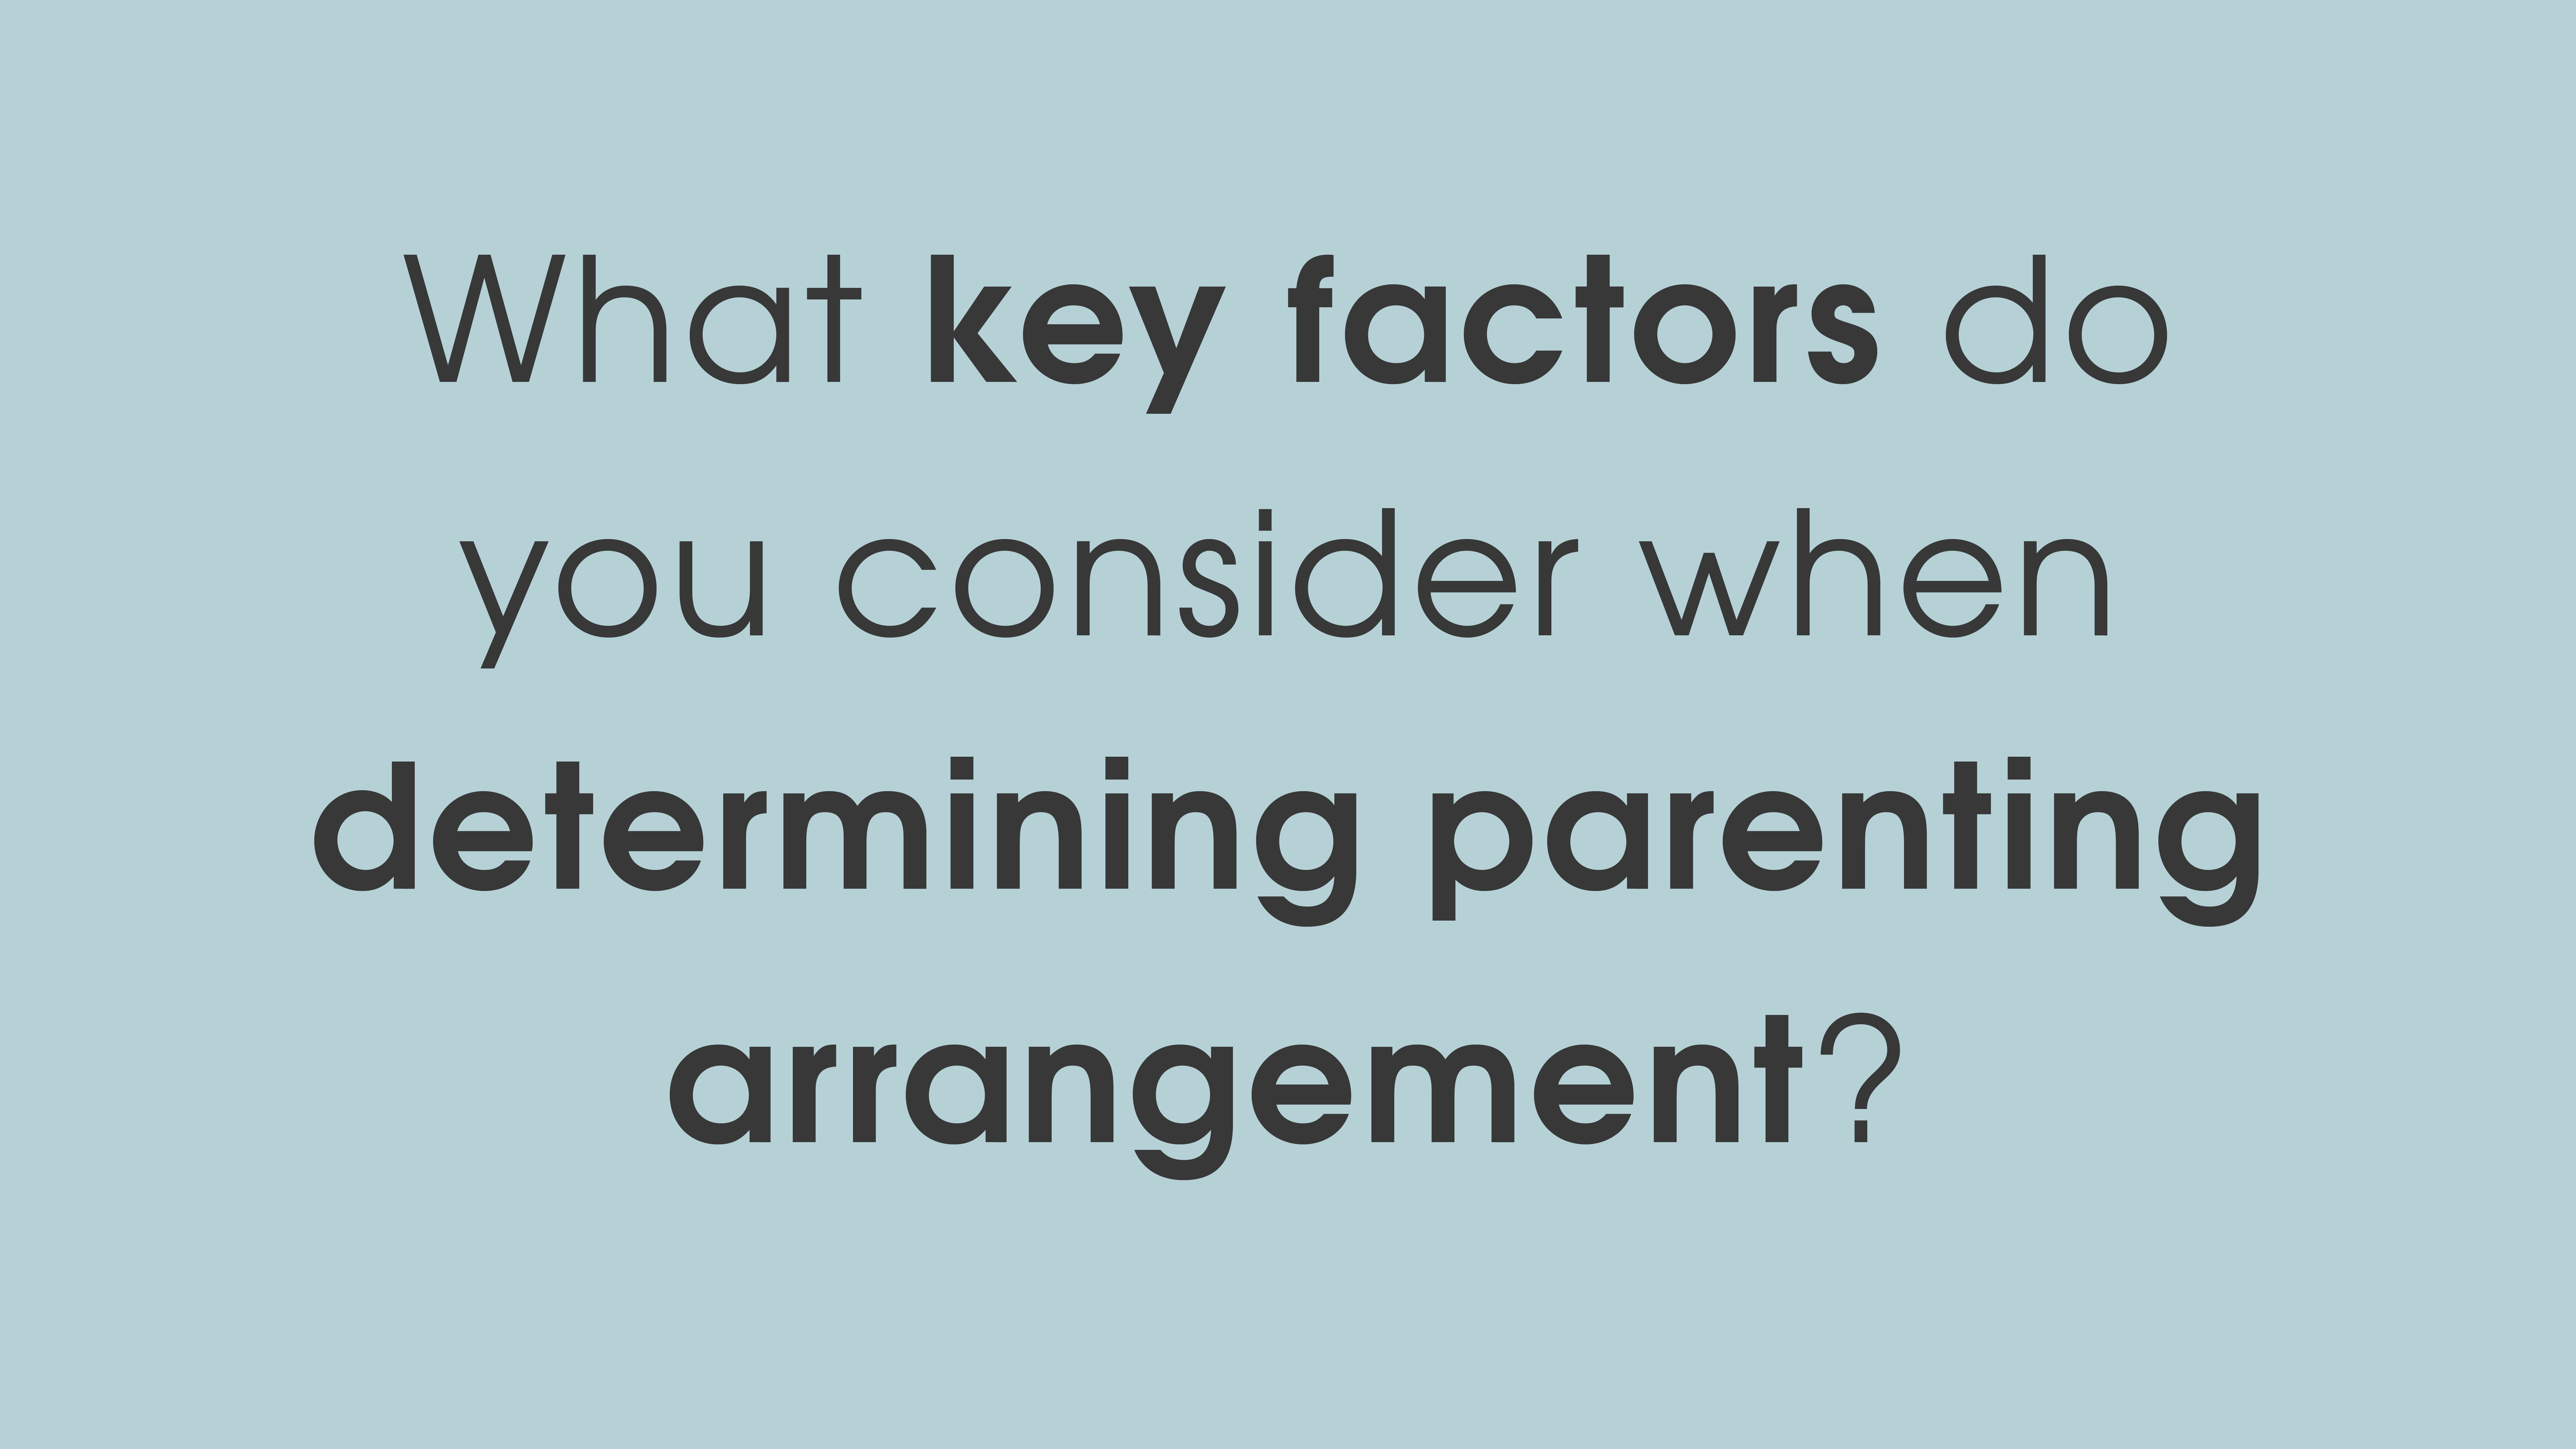 What key factors do you consider when determining parenting arrangements?